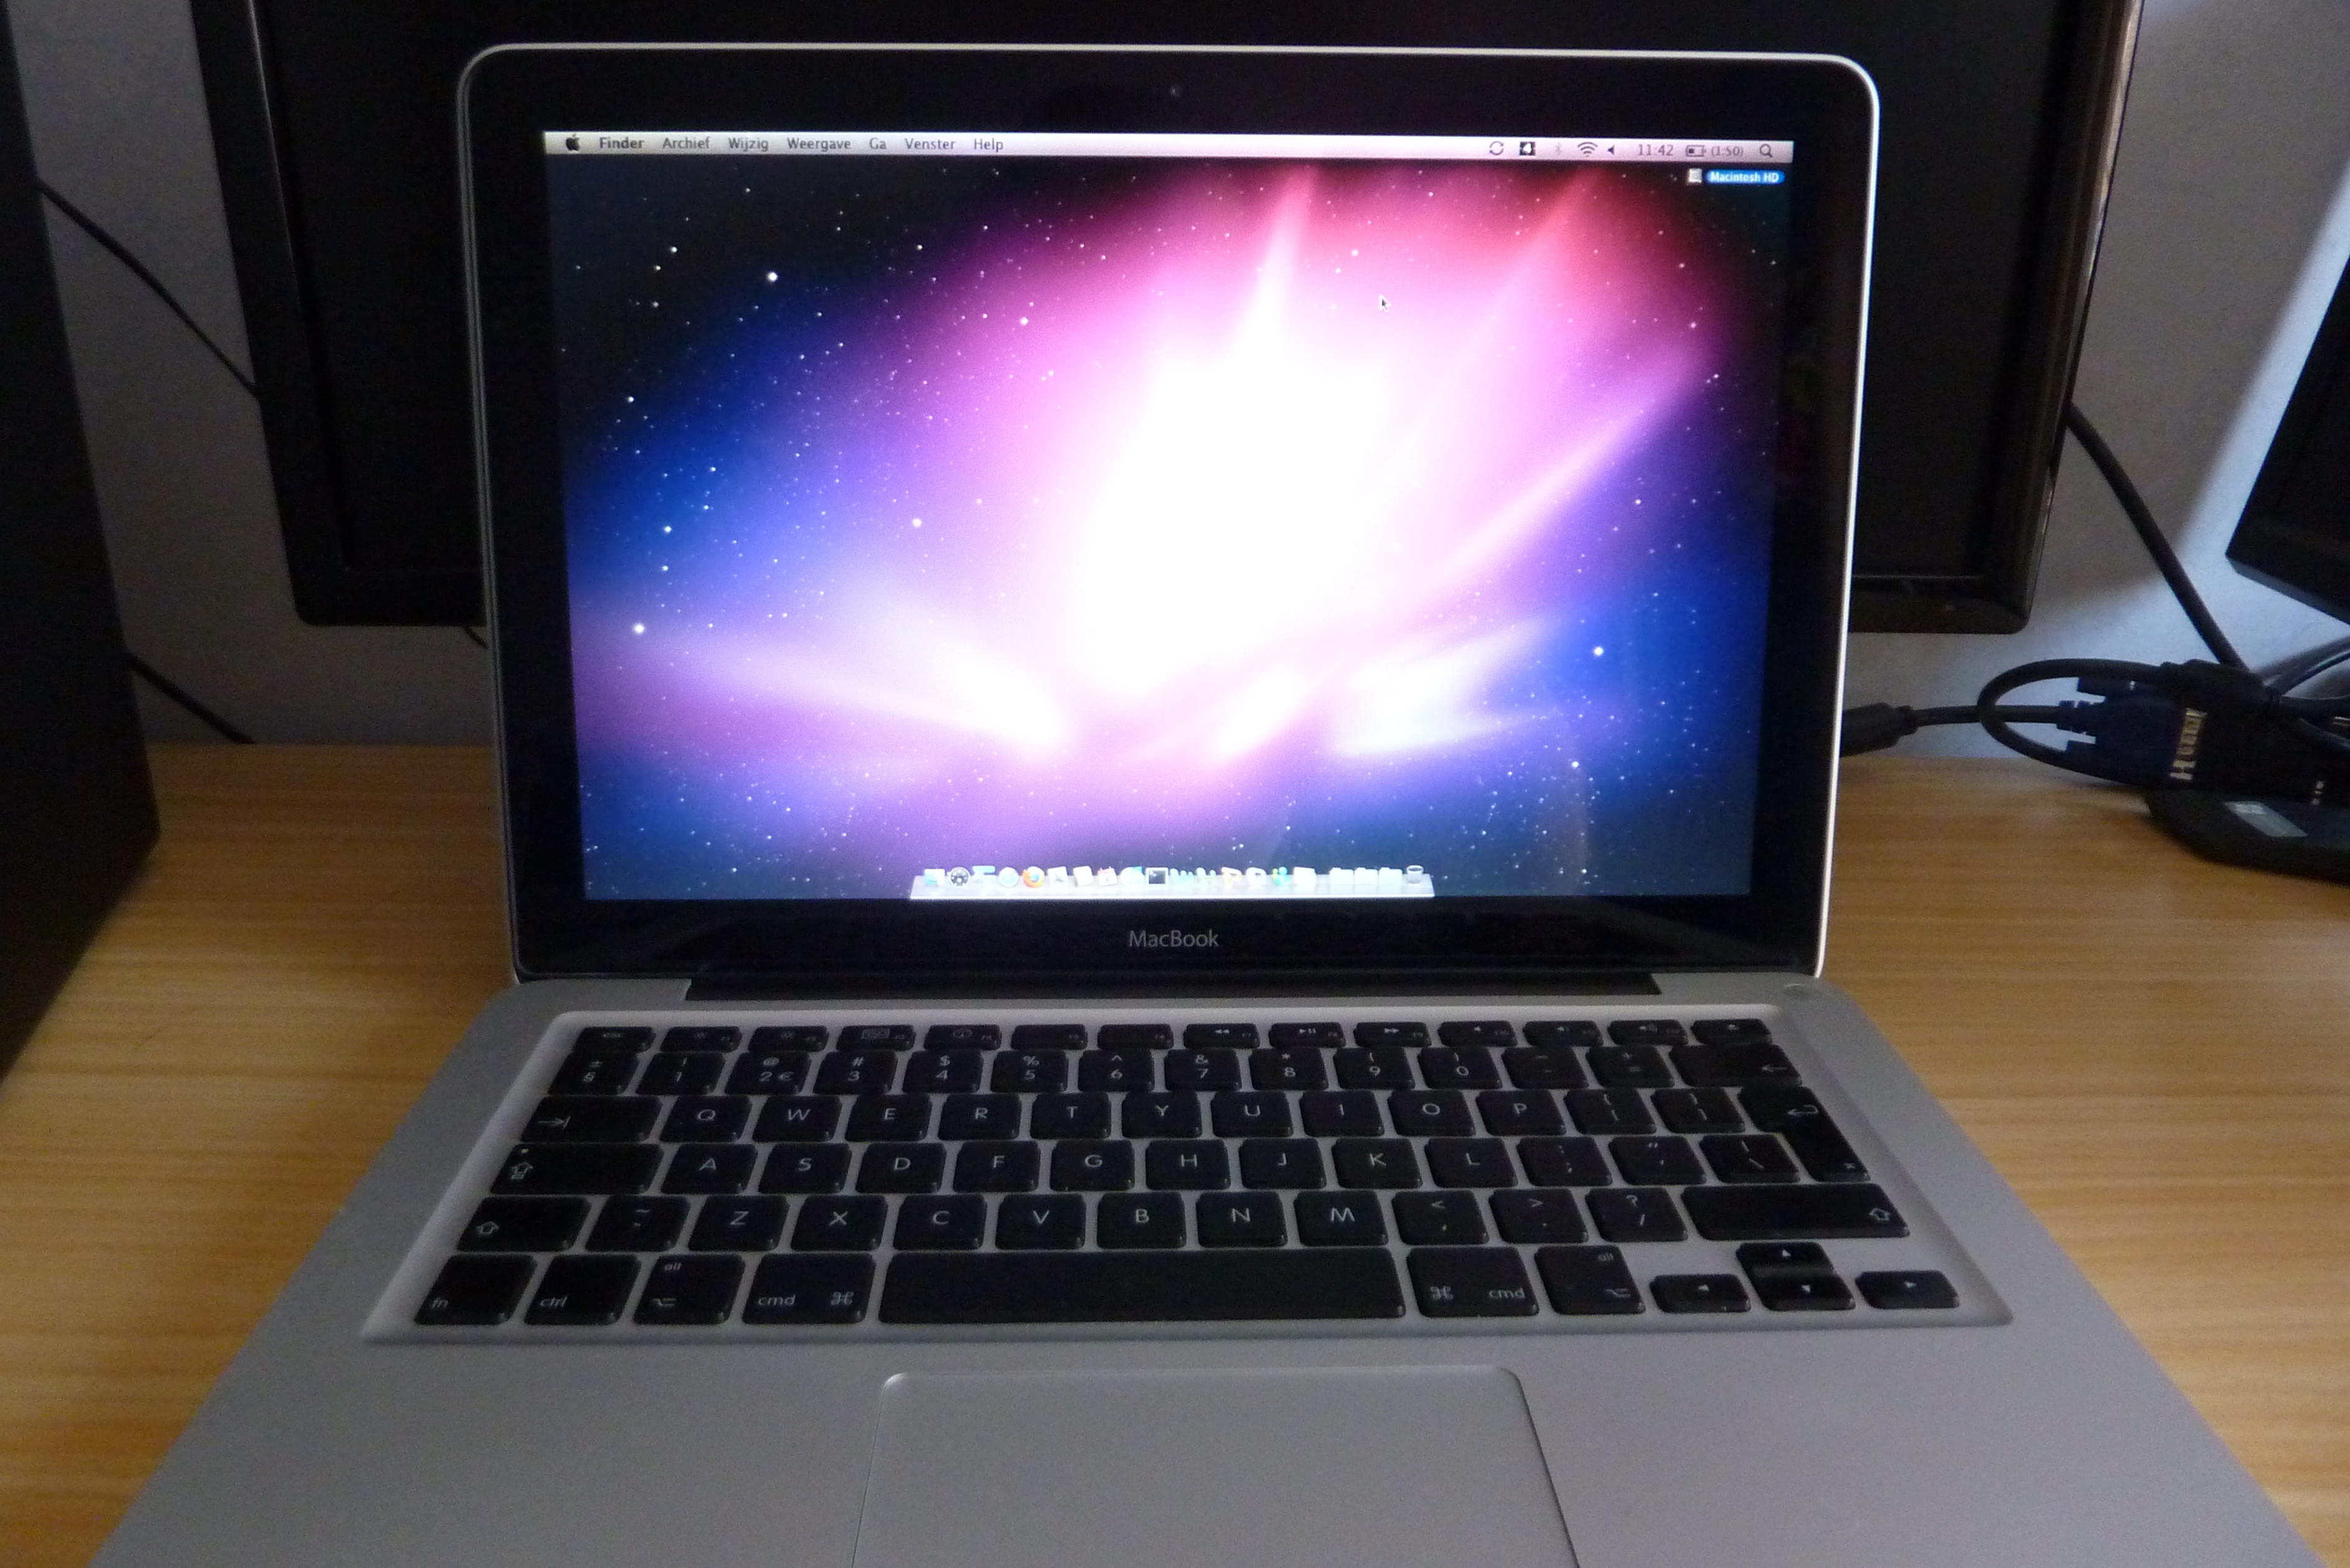 [TK] MacBook 13,3&quot; | 2GHz | 160GB | 2GB | Aluminium-p1000830-jpg